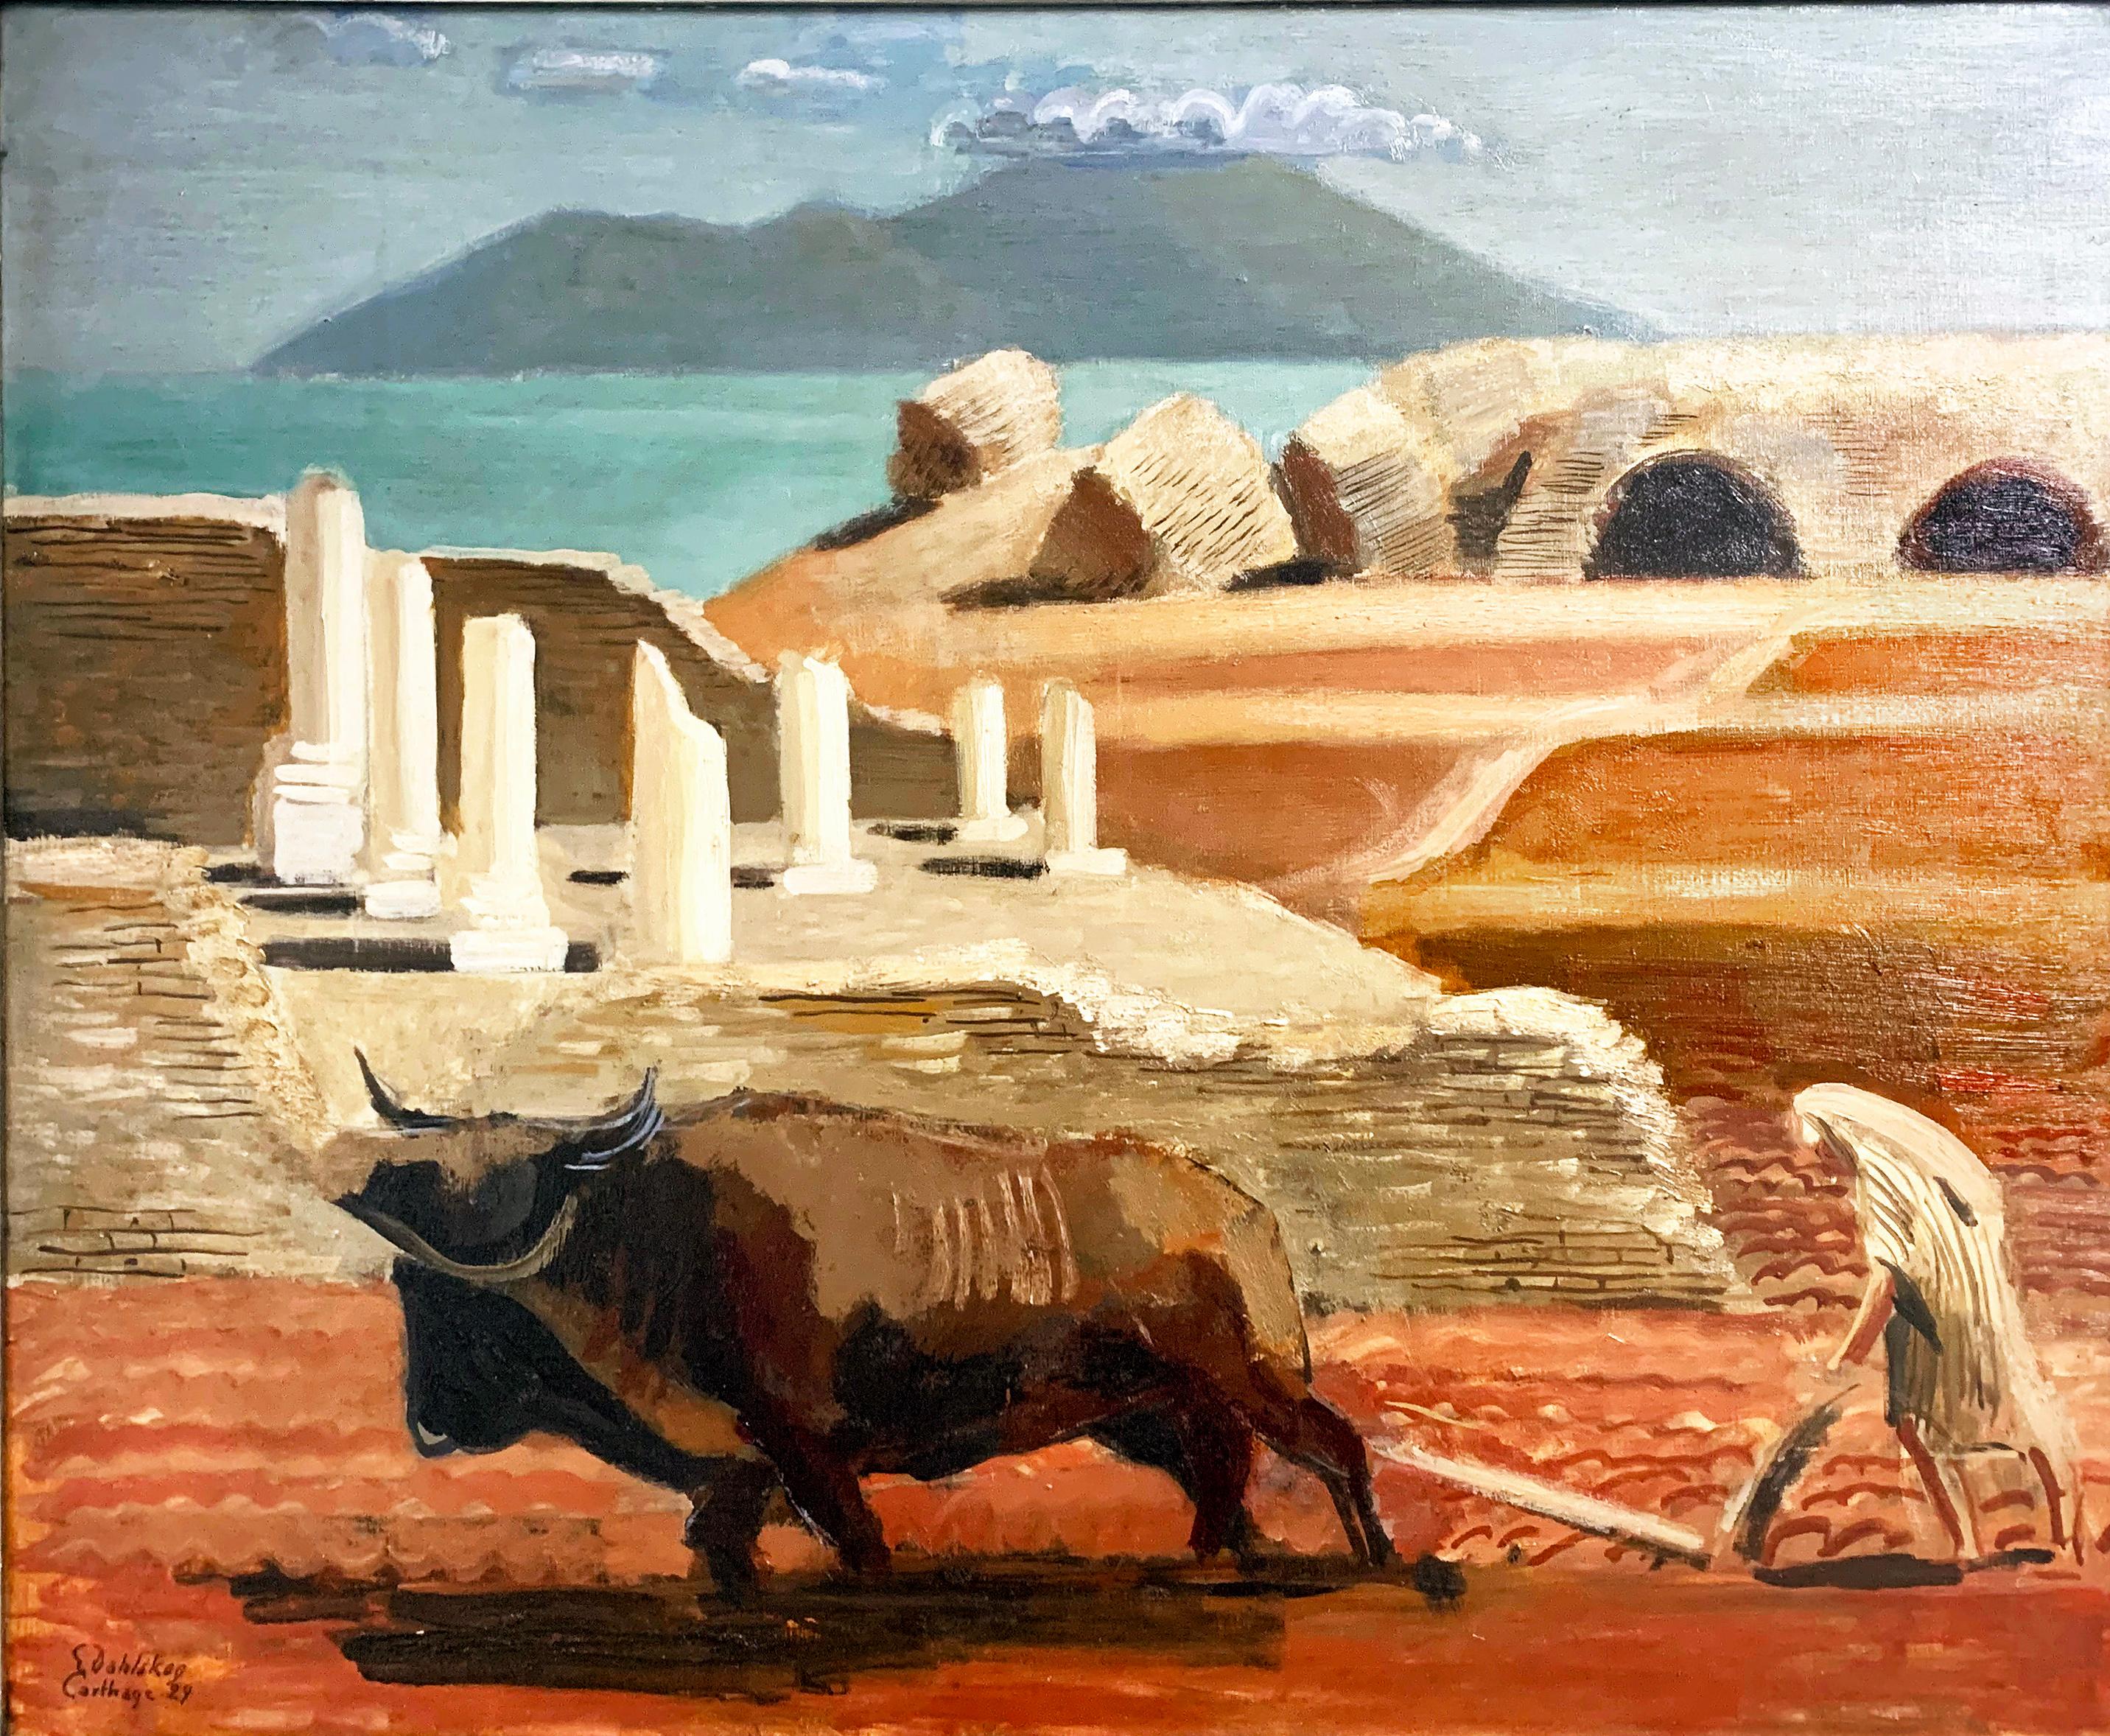 Très atmosphérique et richement coloré, ce paysage vintage de 1929 réalisé par un peintre suédois dépeint des couches d'histoire et de tradition, de l'homme en tenue arabe traditionnelle labourant les champs avec son bœuf au premier plan, aux